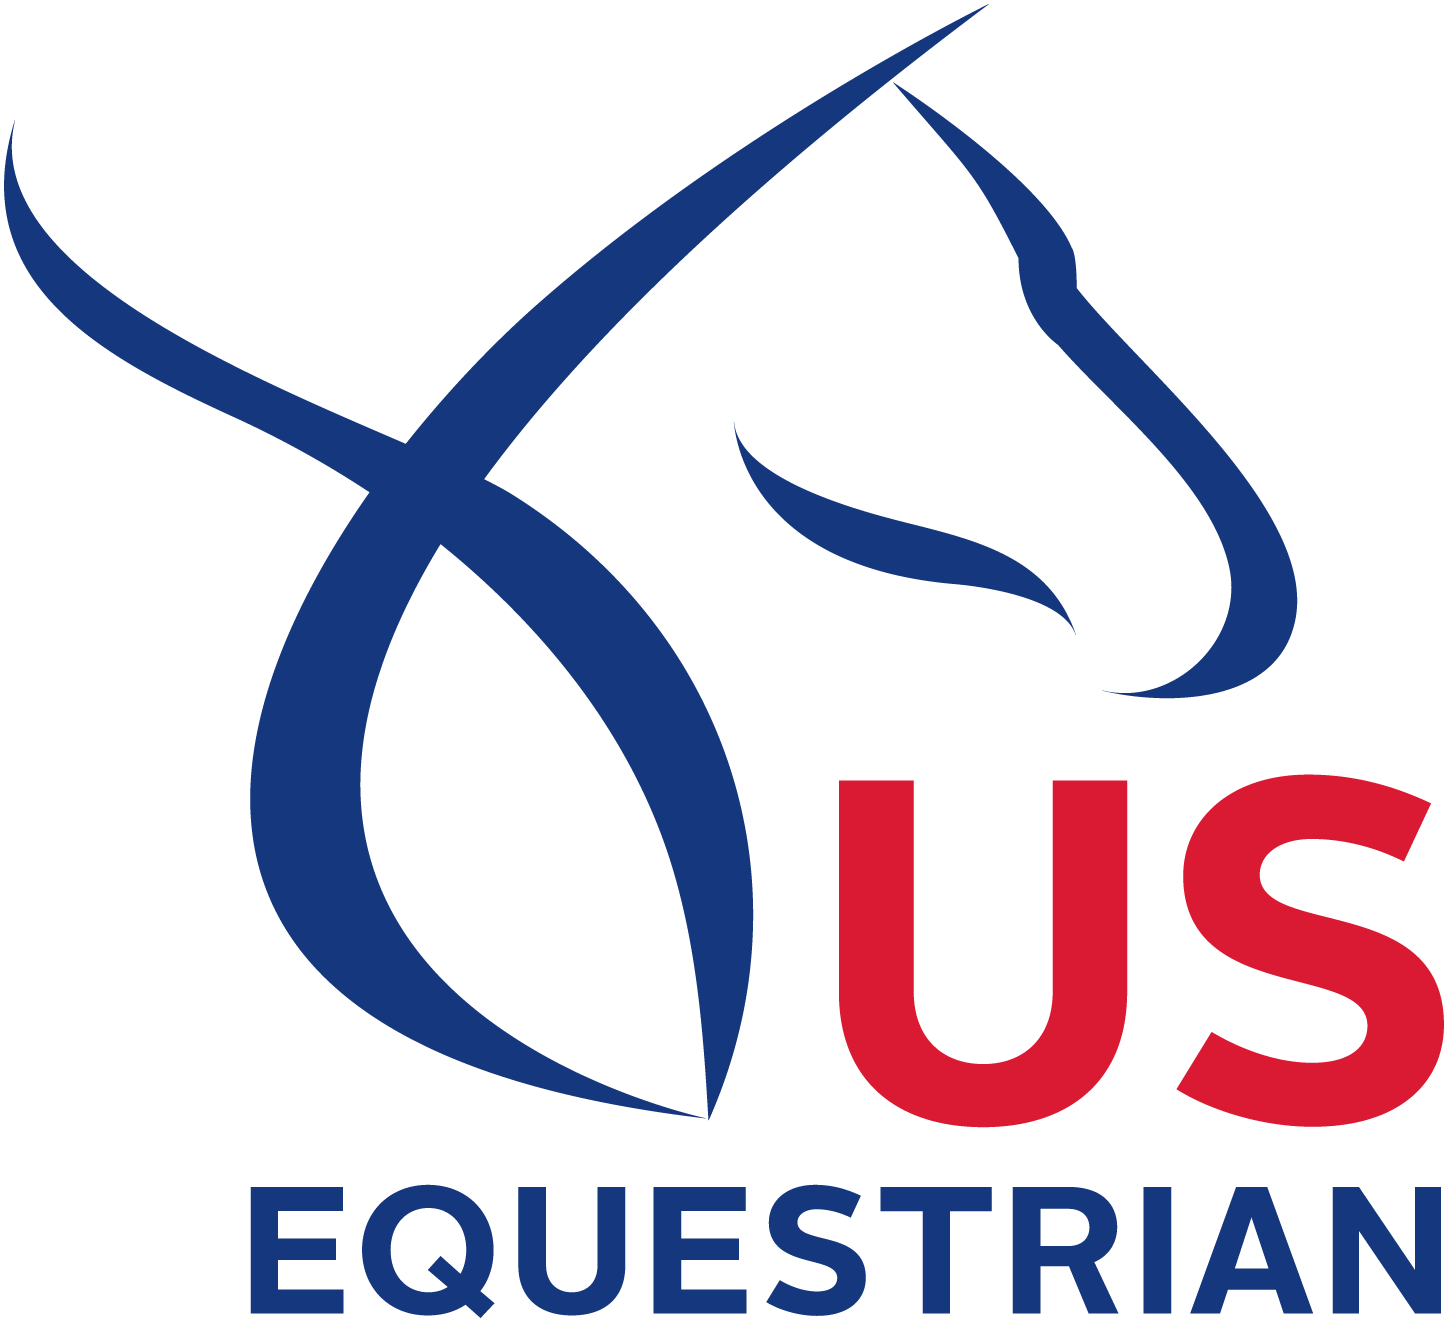 United States Equestrian Federation Logo